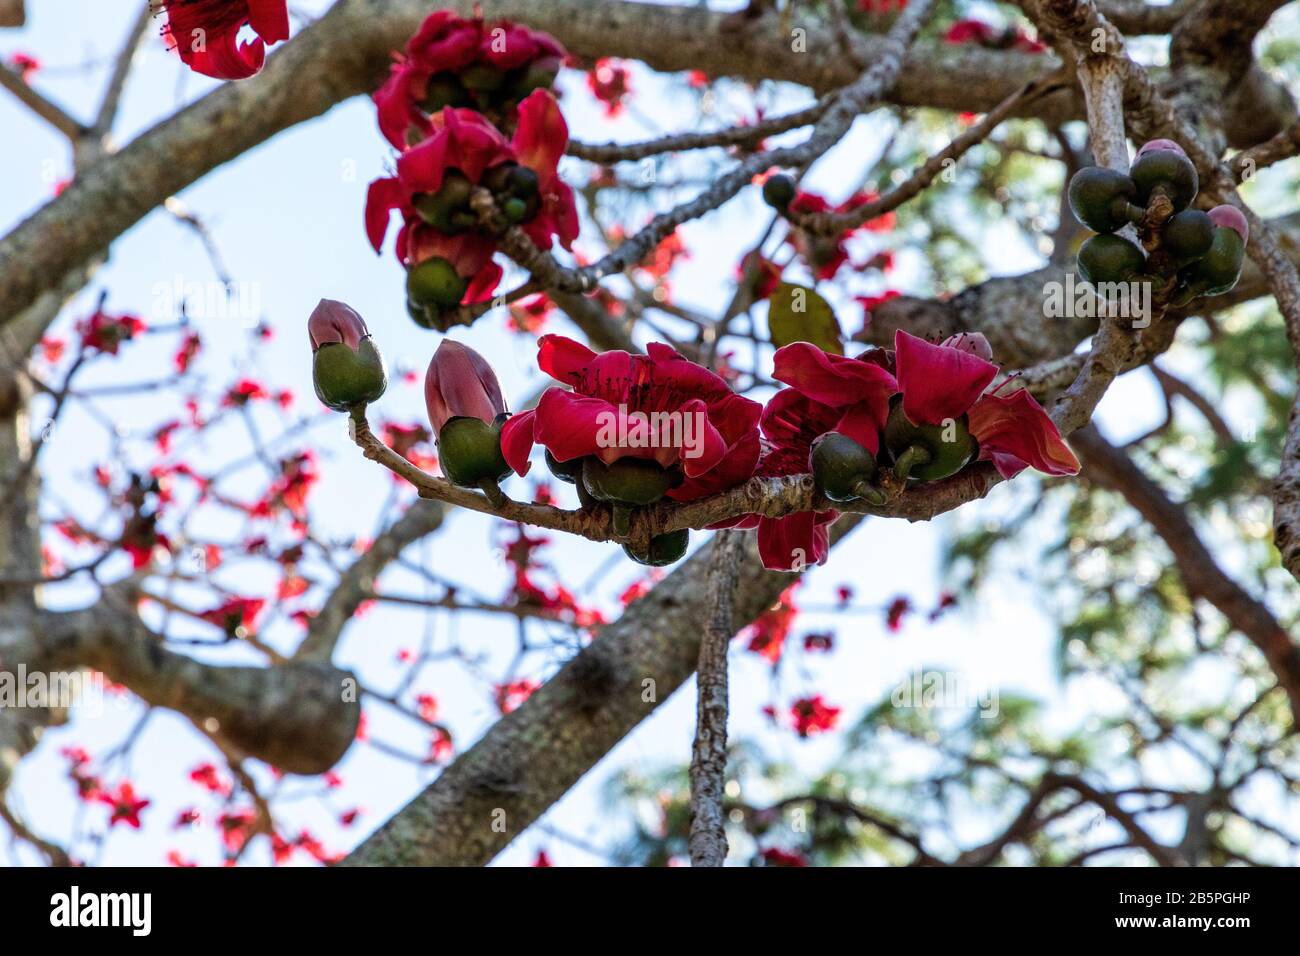 Fleurs de coton de soie rouge Bombax ceiba se trouve en Australie et en Asie. Banque D'Images